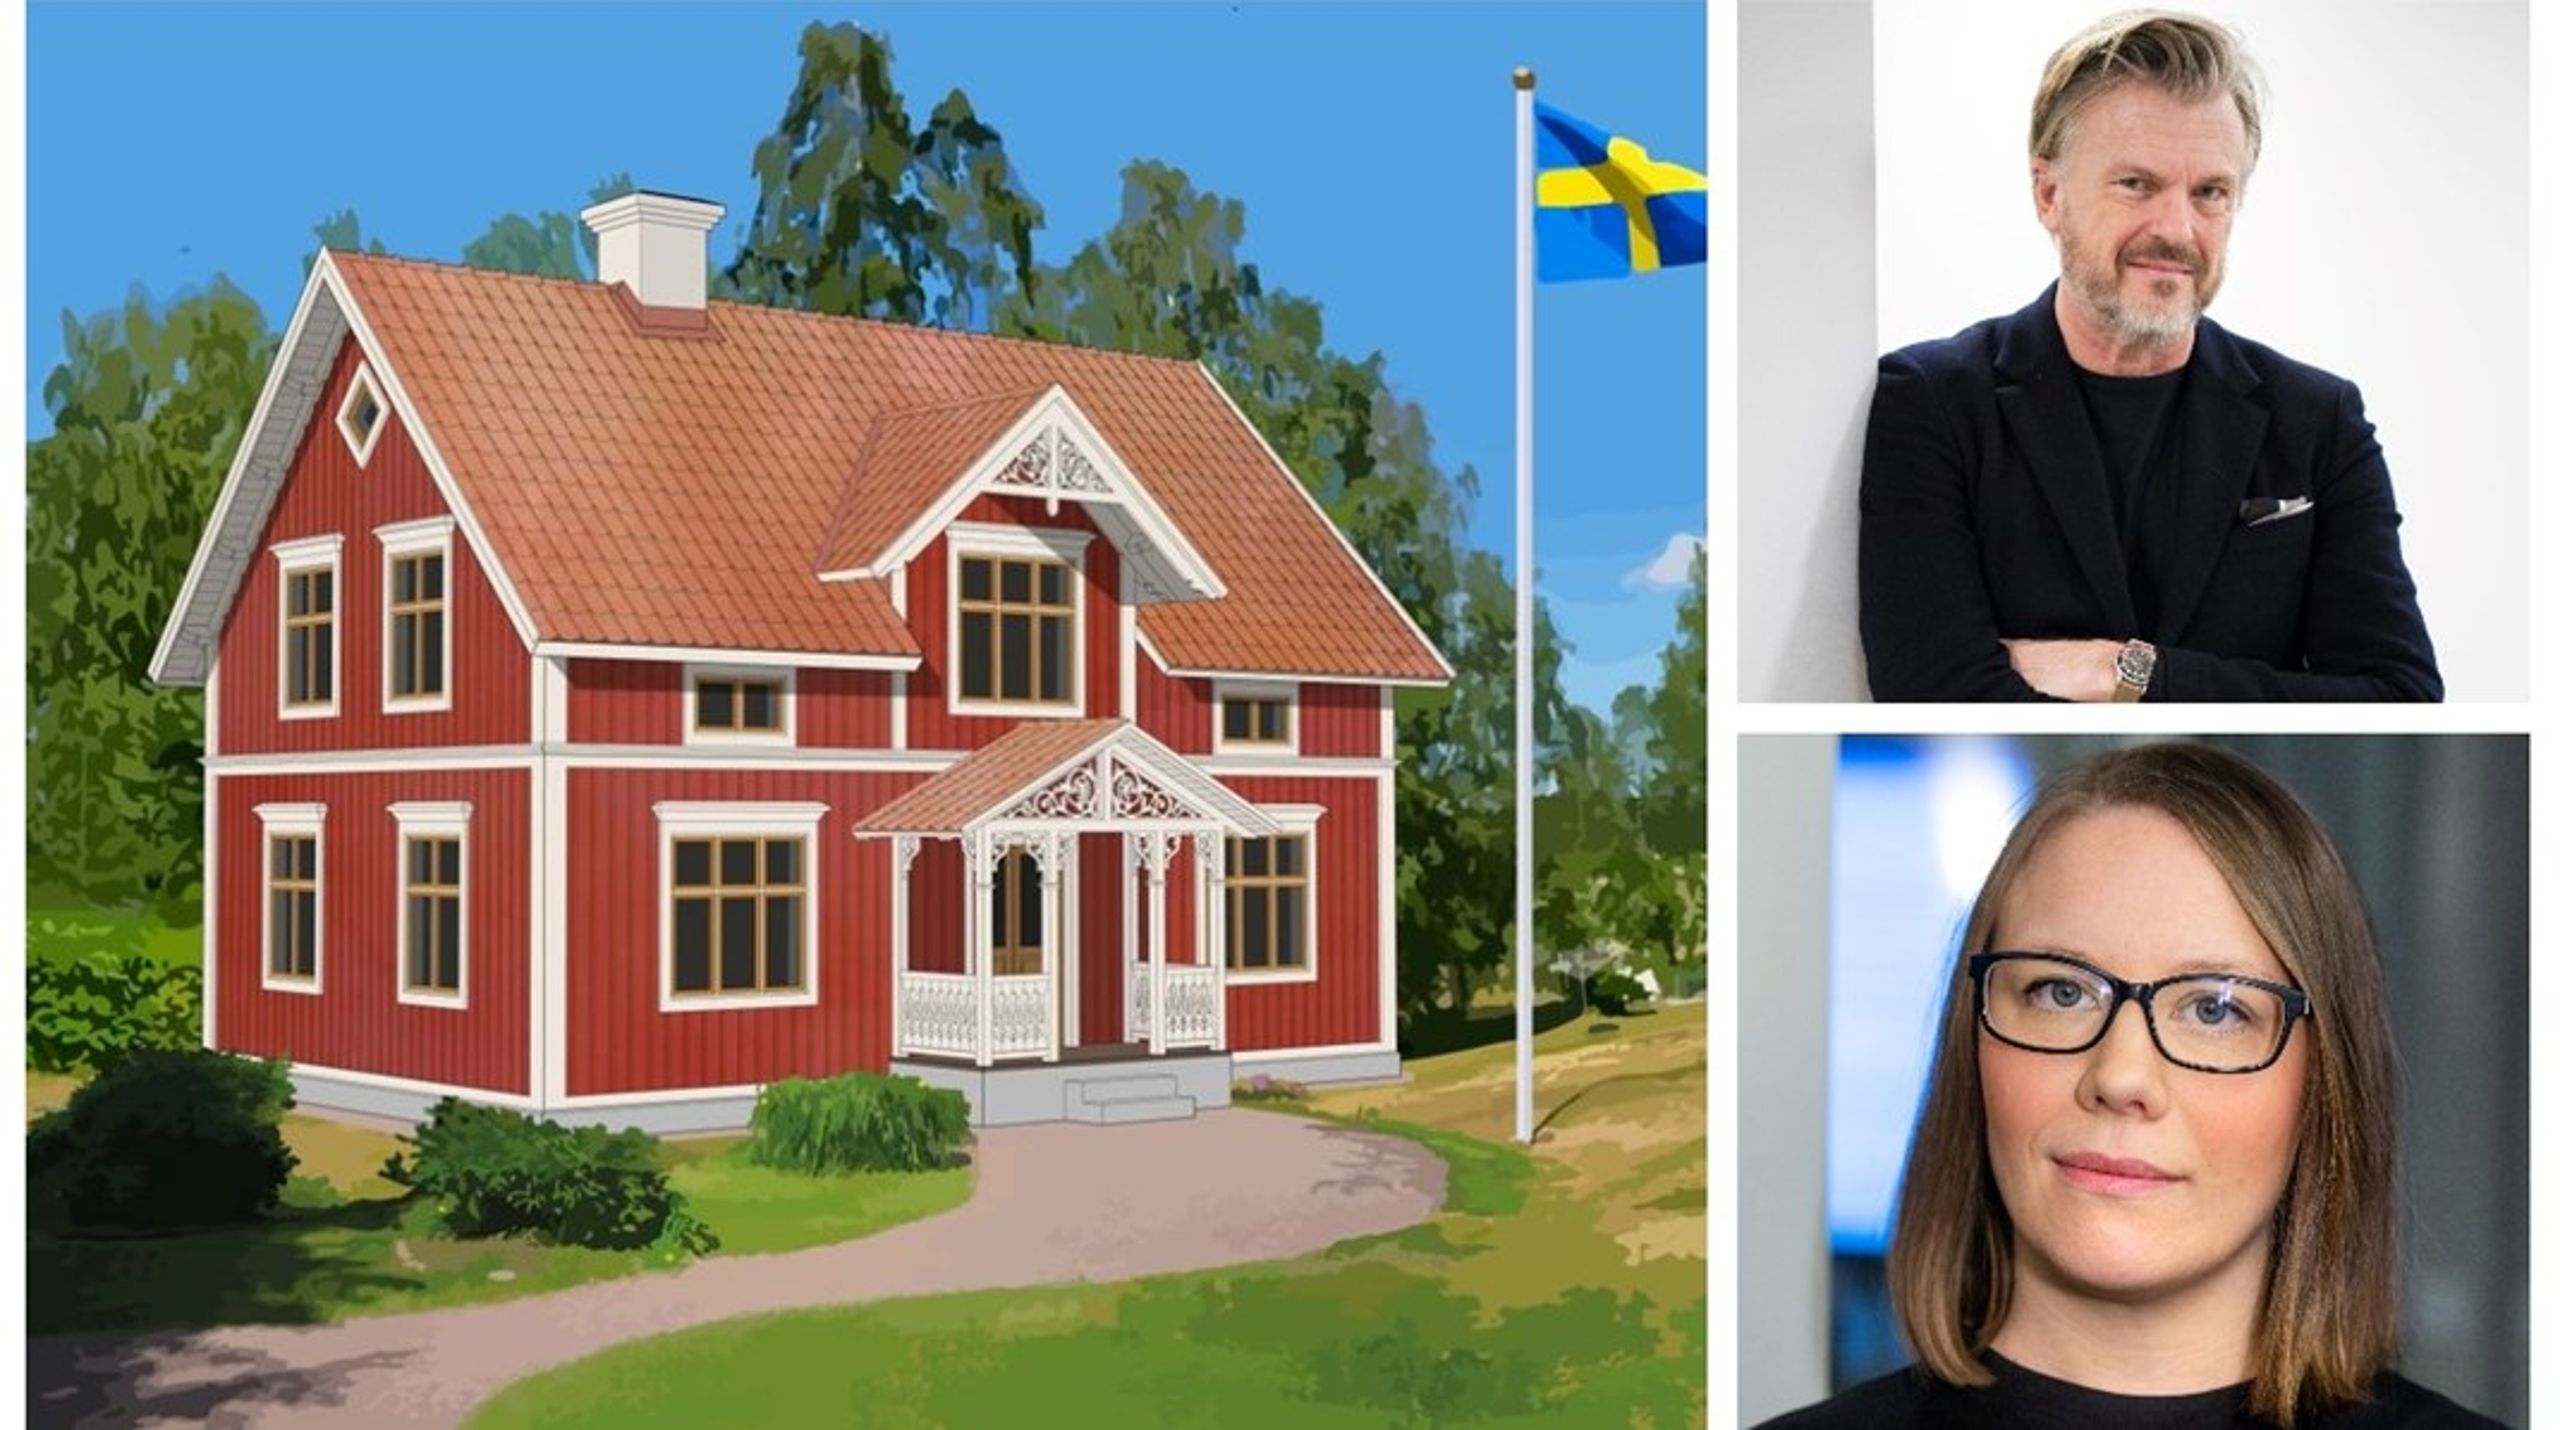 Anna Broman, Byggföretagen, säger generellt angående typgodkända hus att det vore&nbsp;värdefullt för att öka produktiviteten i branschen. Thomas Sandell, en av Sveriges mest välkända arkitekter, är kritisk till Sverigedemokraternas specifika&nbsp;förslag om ett typgodkänt Sverigehus i traditionell stil.<br>